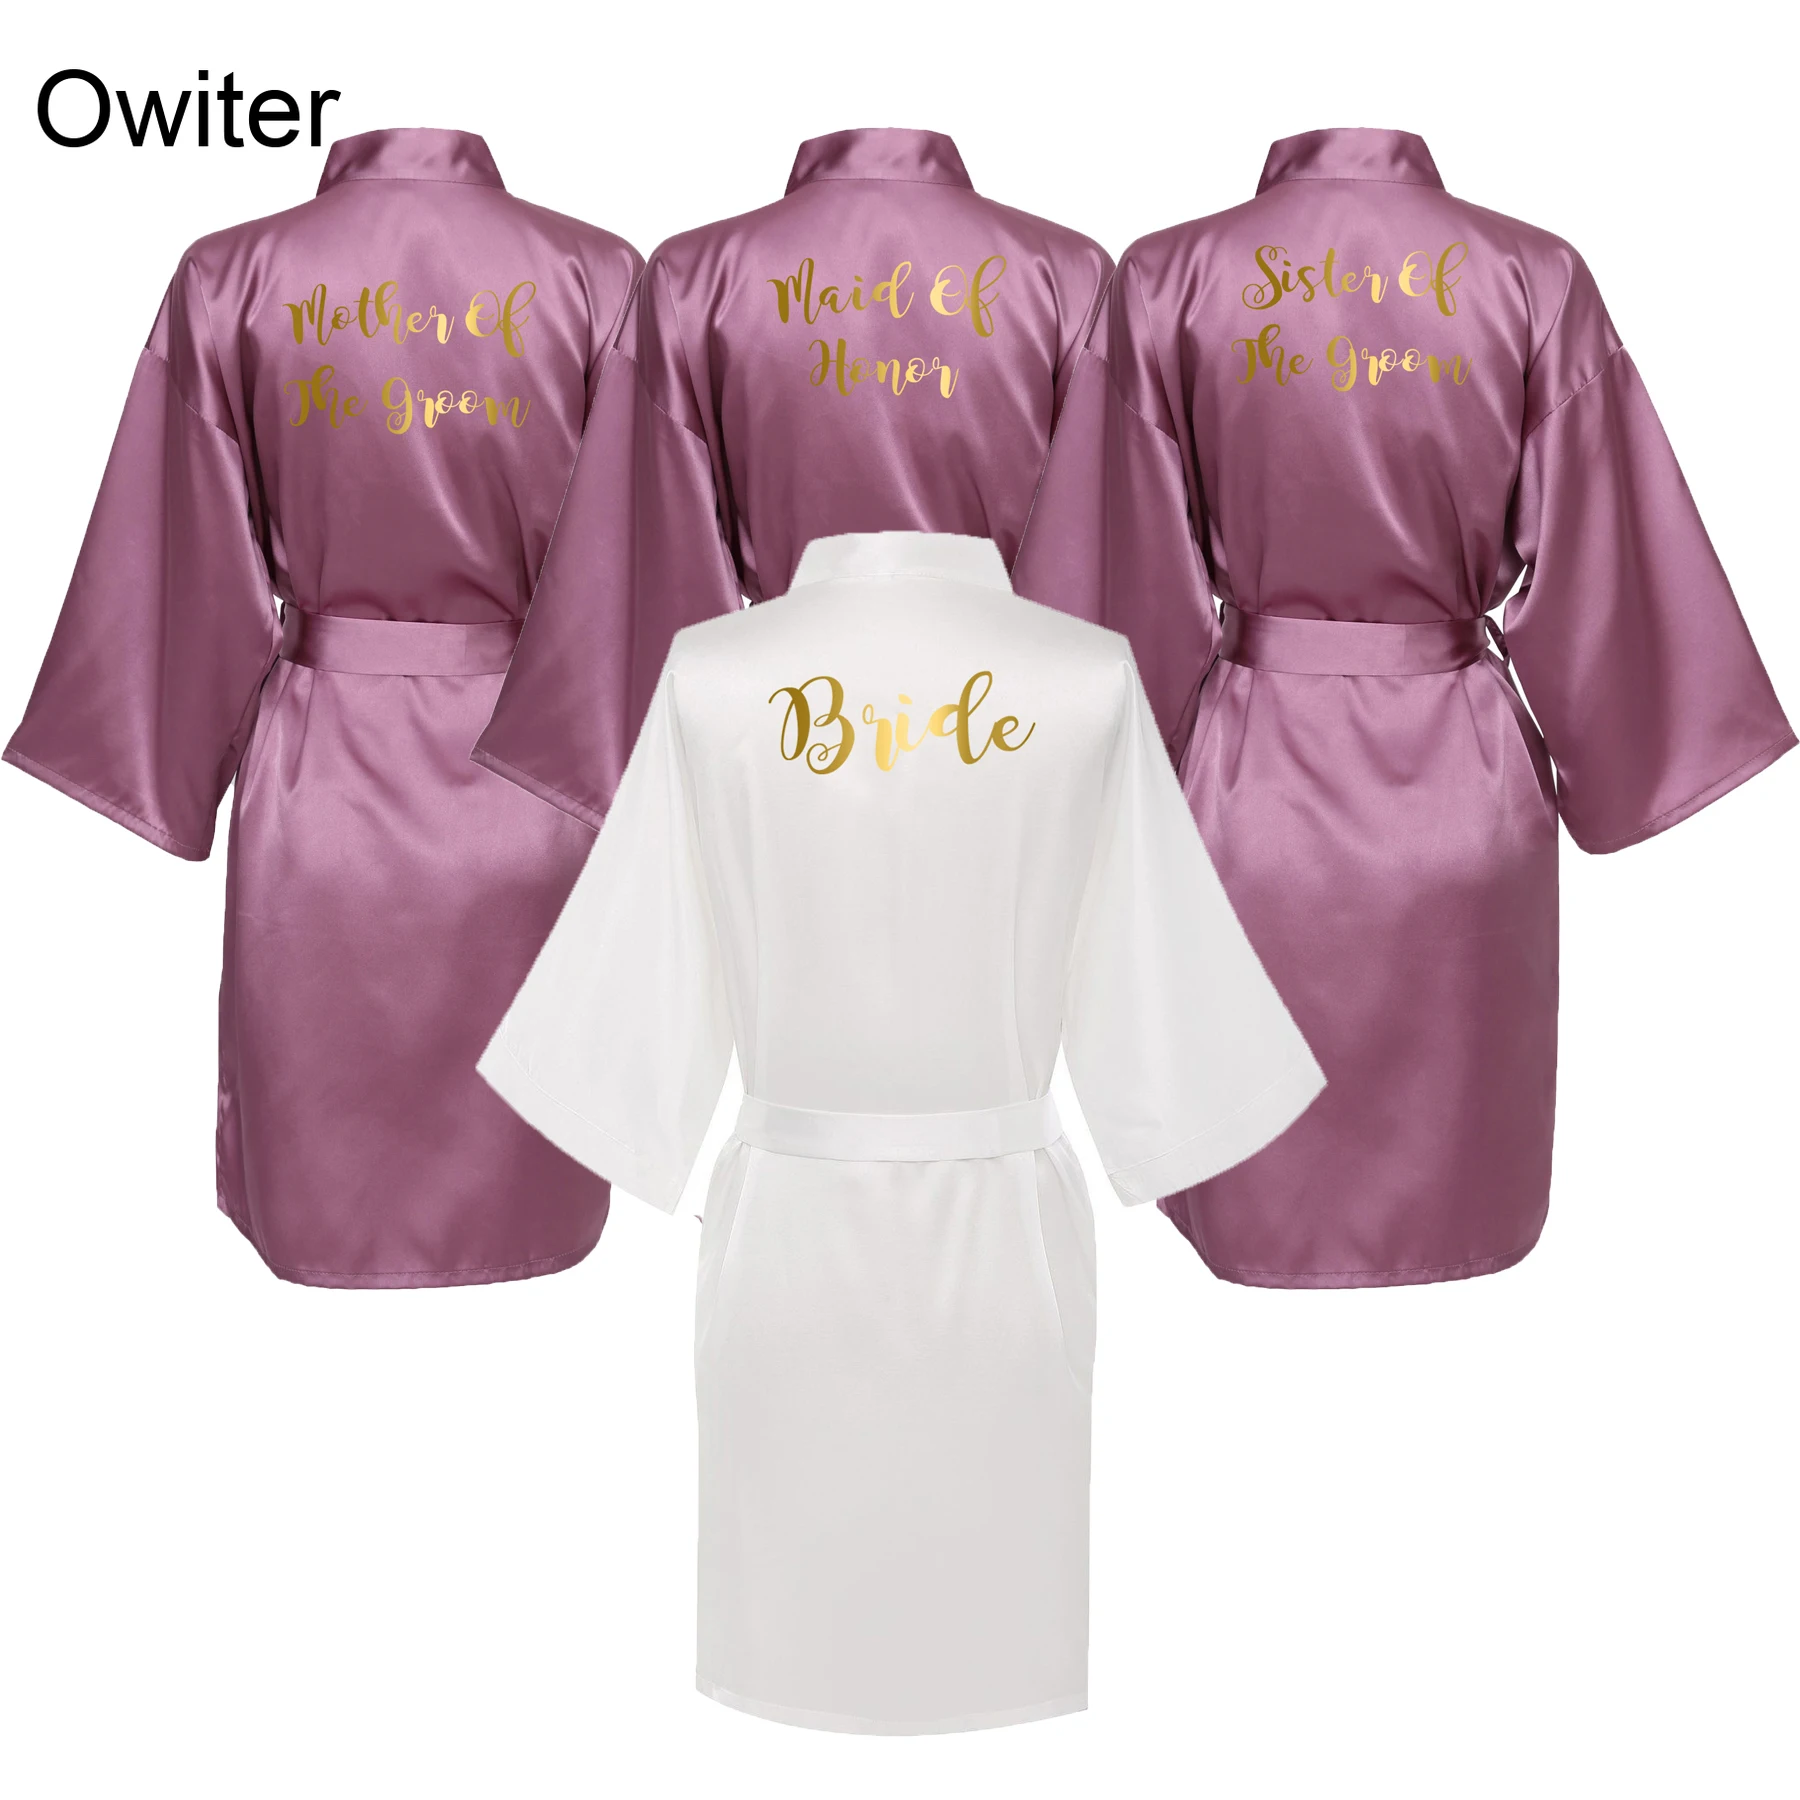 

Owiter 2019 Mauve Gown Satin Silk Robe Wedding Bath Robe Bride Bridesmaid Dressing Women Robes Gold Word Sleepwear